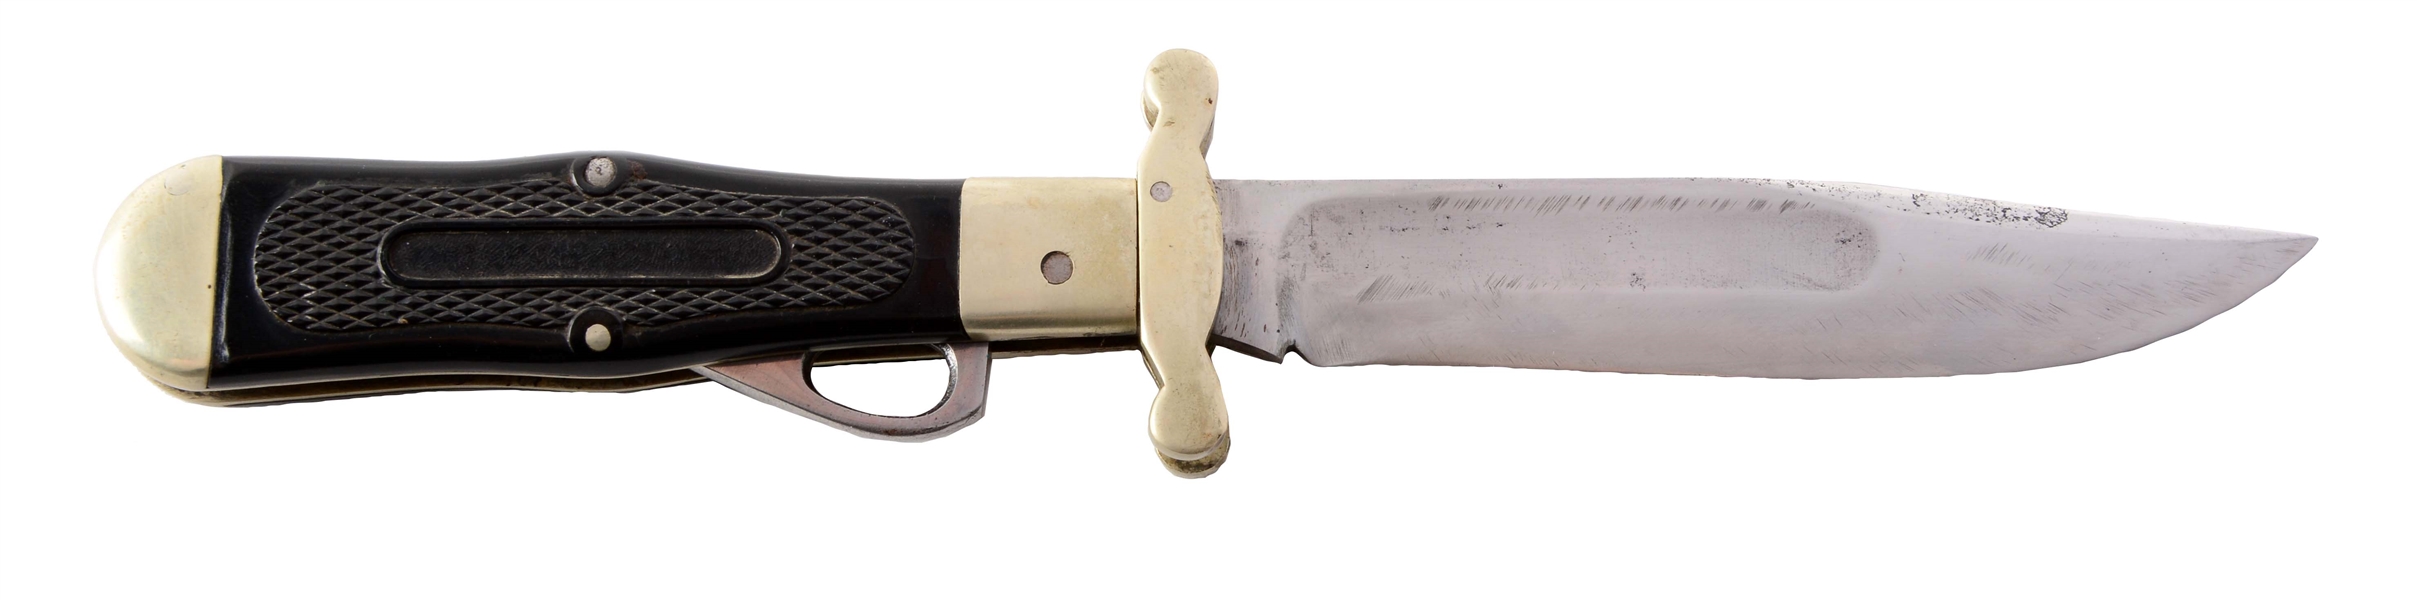 M.S.A. CO. GLADSTONE EARLY FOLDING SAFETY HUNTER KNIFE.